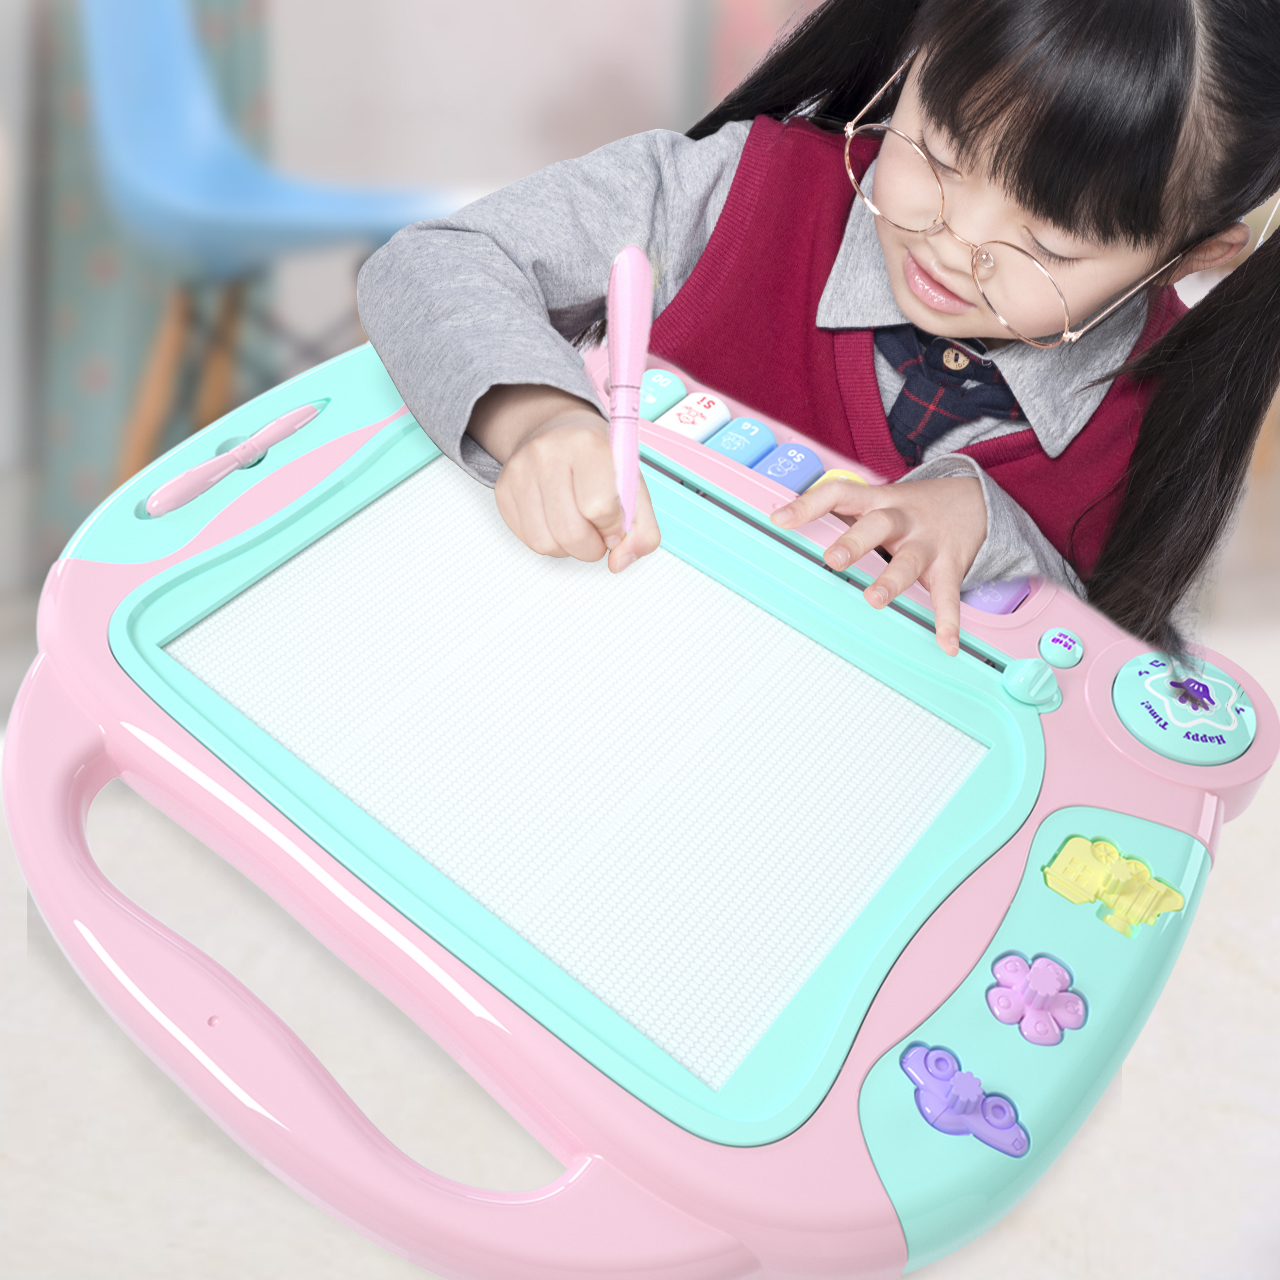 画板儿童磁性笔婴幼儿写字板涂鸦绘画板2岁宝宝彩色磁力大号1-3岁